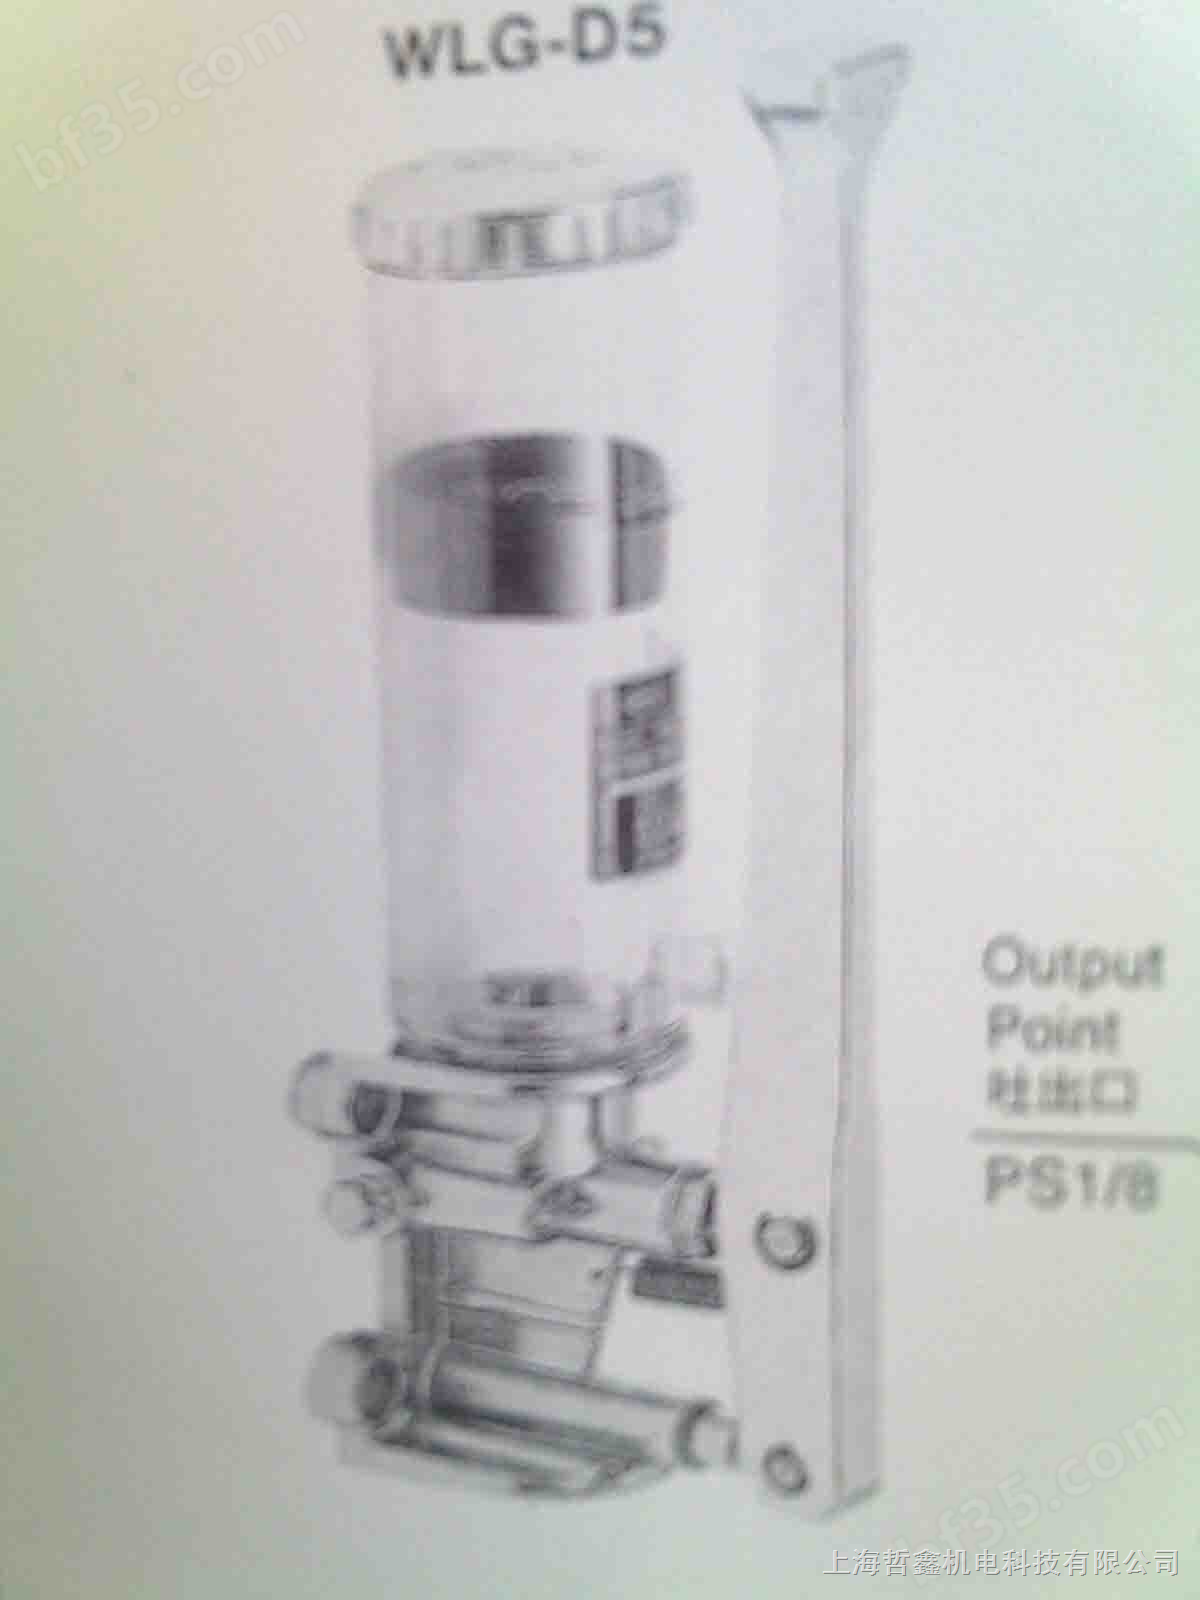 供应 维良油泵 手摇式黄油泵浦 WLG-D5、WLG-D5-2